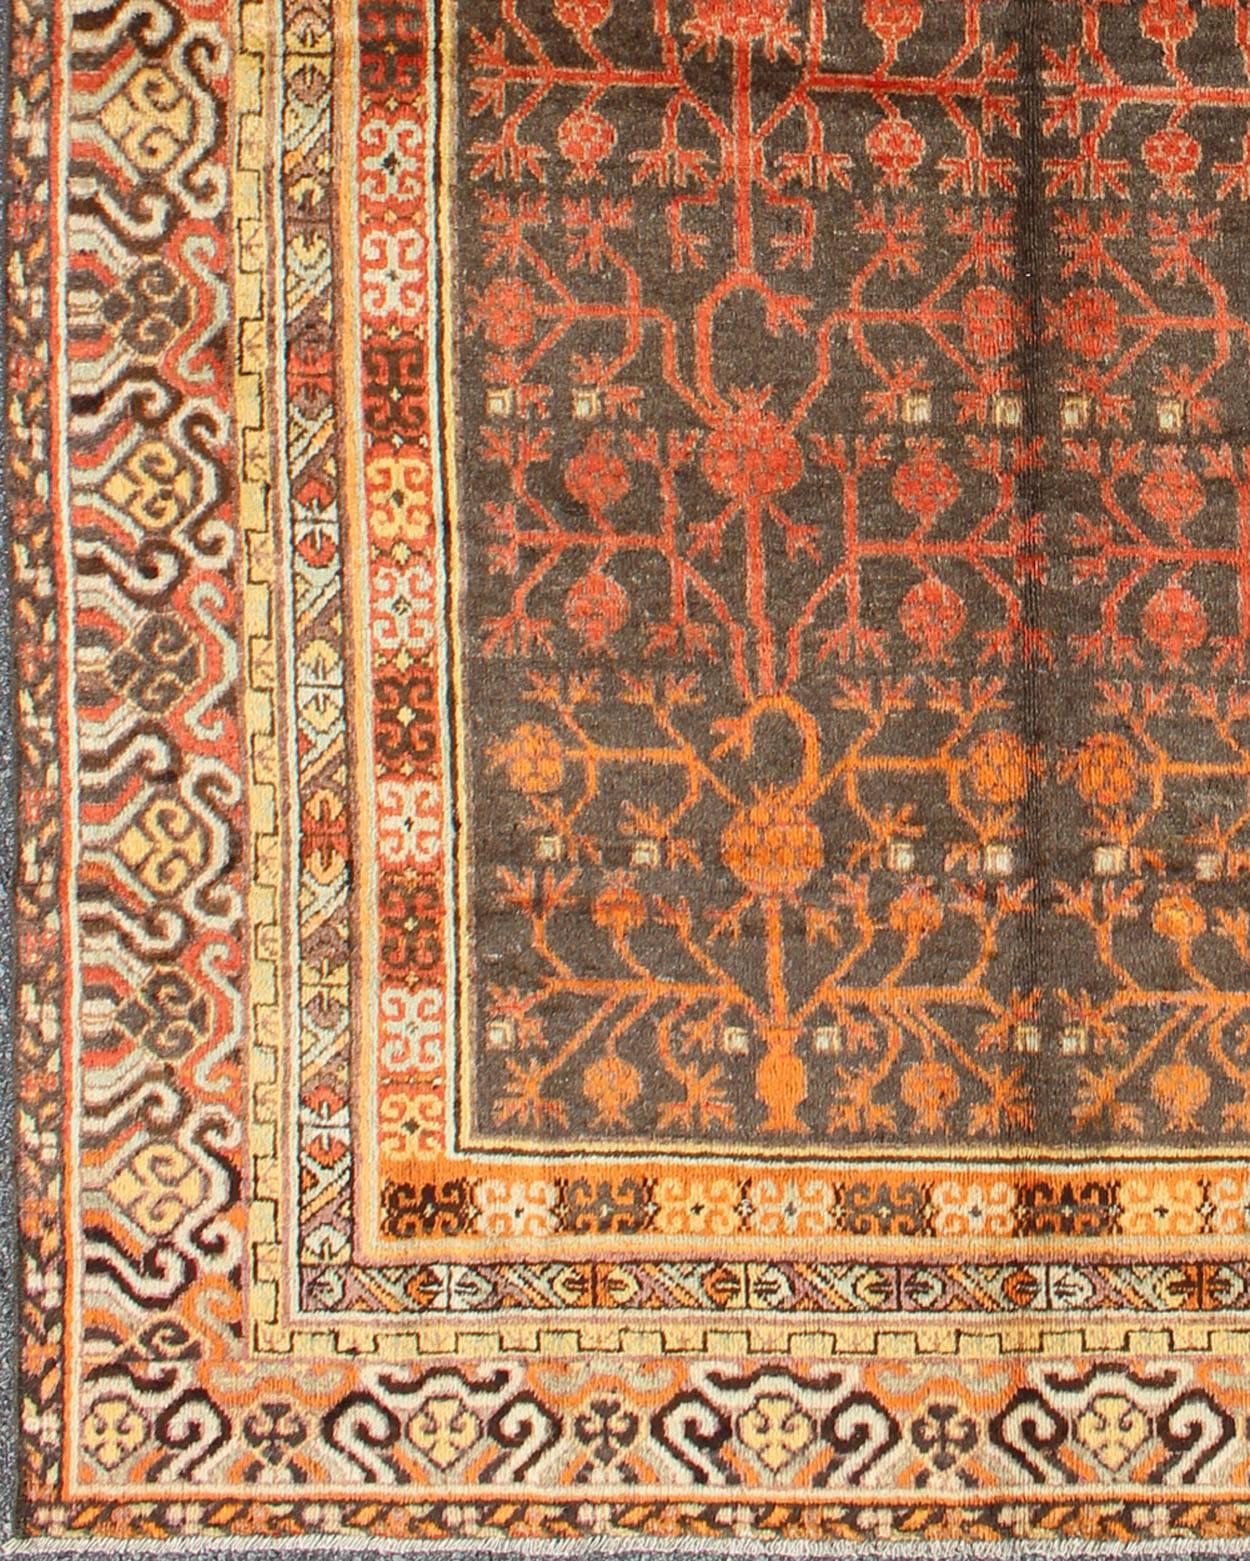 Tapis Khotan d'Asie centrale, datant du début du XXe siècle, présentant un motif traditionnel de grenades sur un fond anthracite, entouré de multiples bordures florales complémentaires de couleur or et orange. 
Mesures : 5'7 x 8'11.